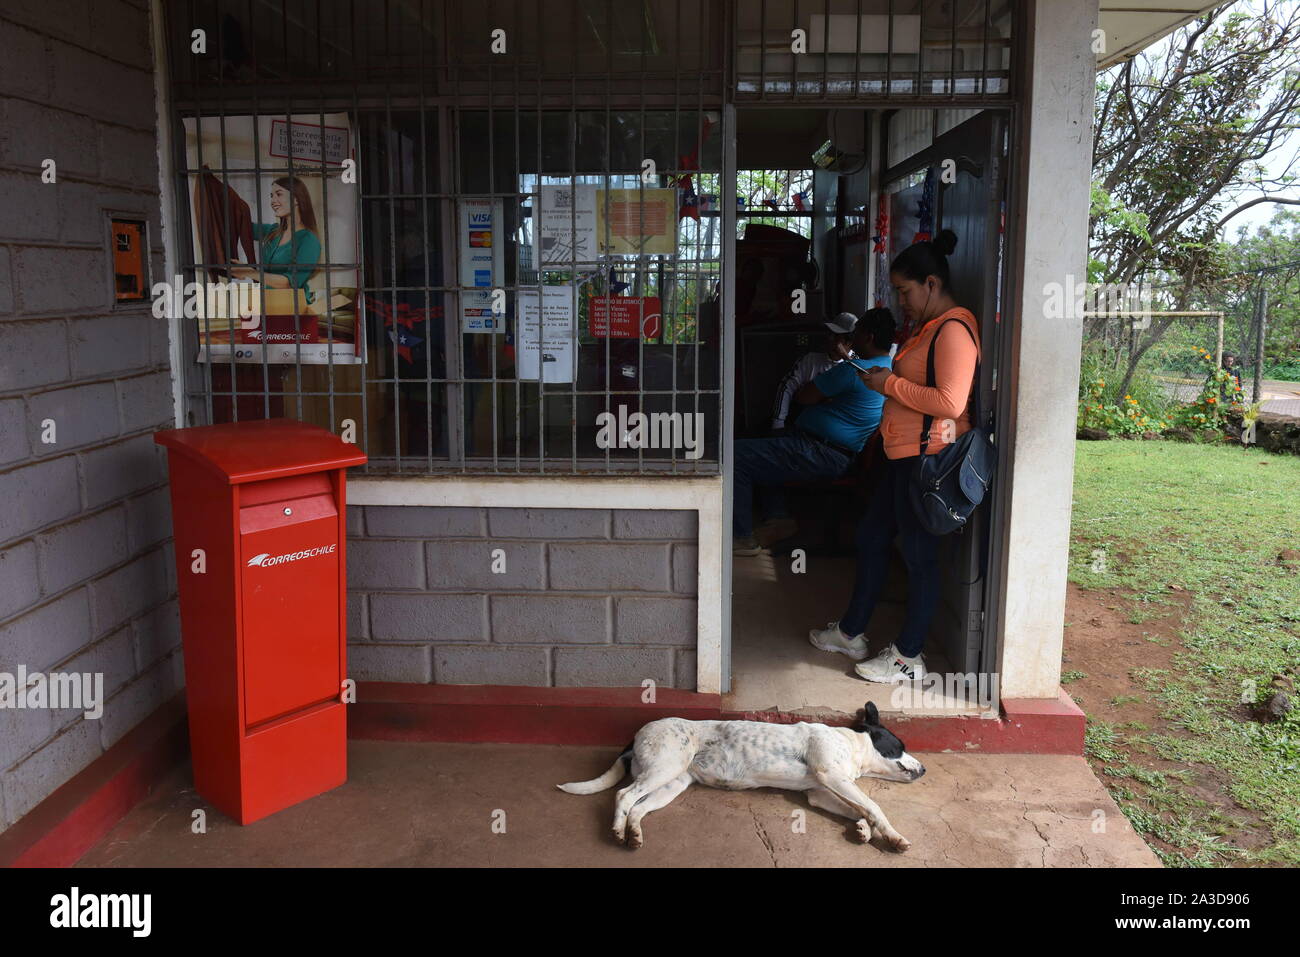 Hanga Roa, Chile. 23 Sep, 2019. Una mujer es visto en el interior de la  oficina de correos.Hanga Roa es la capital de la Isla de Pascua, una isla  chilena en el